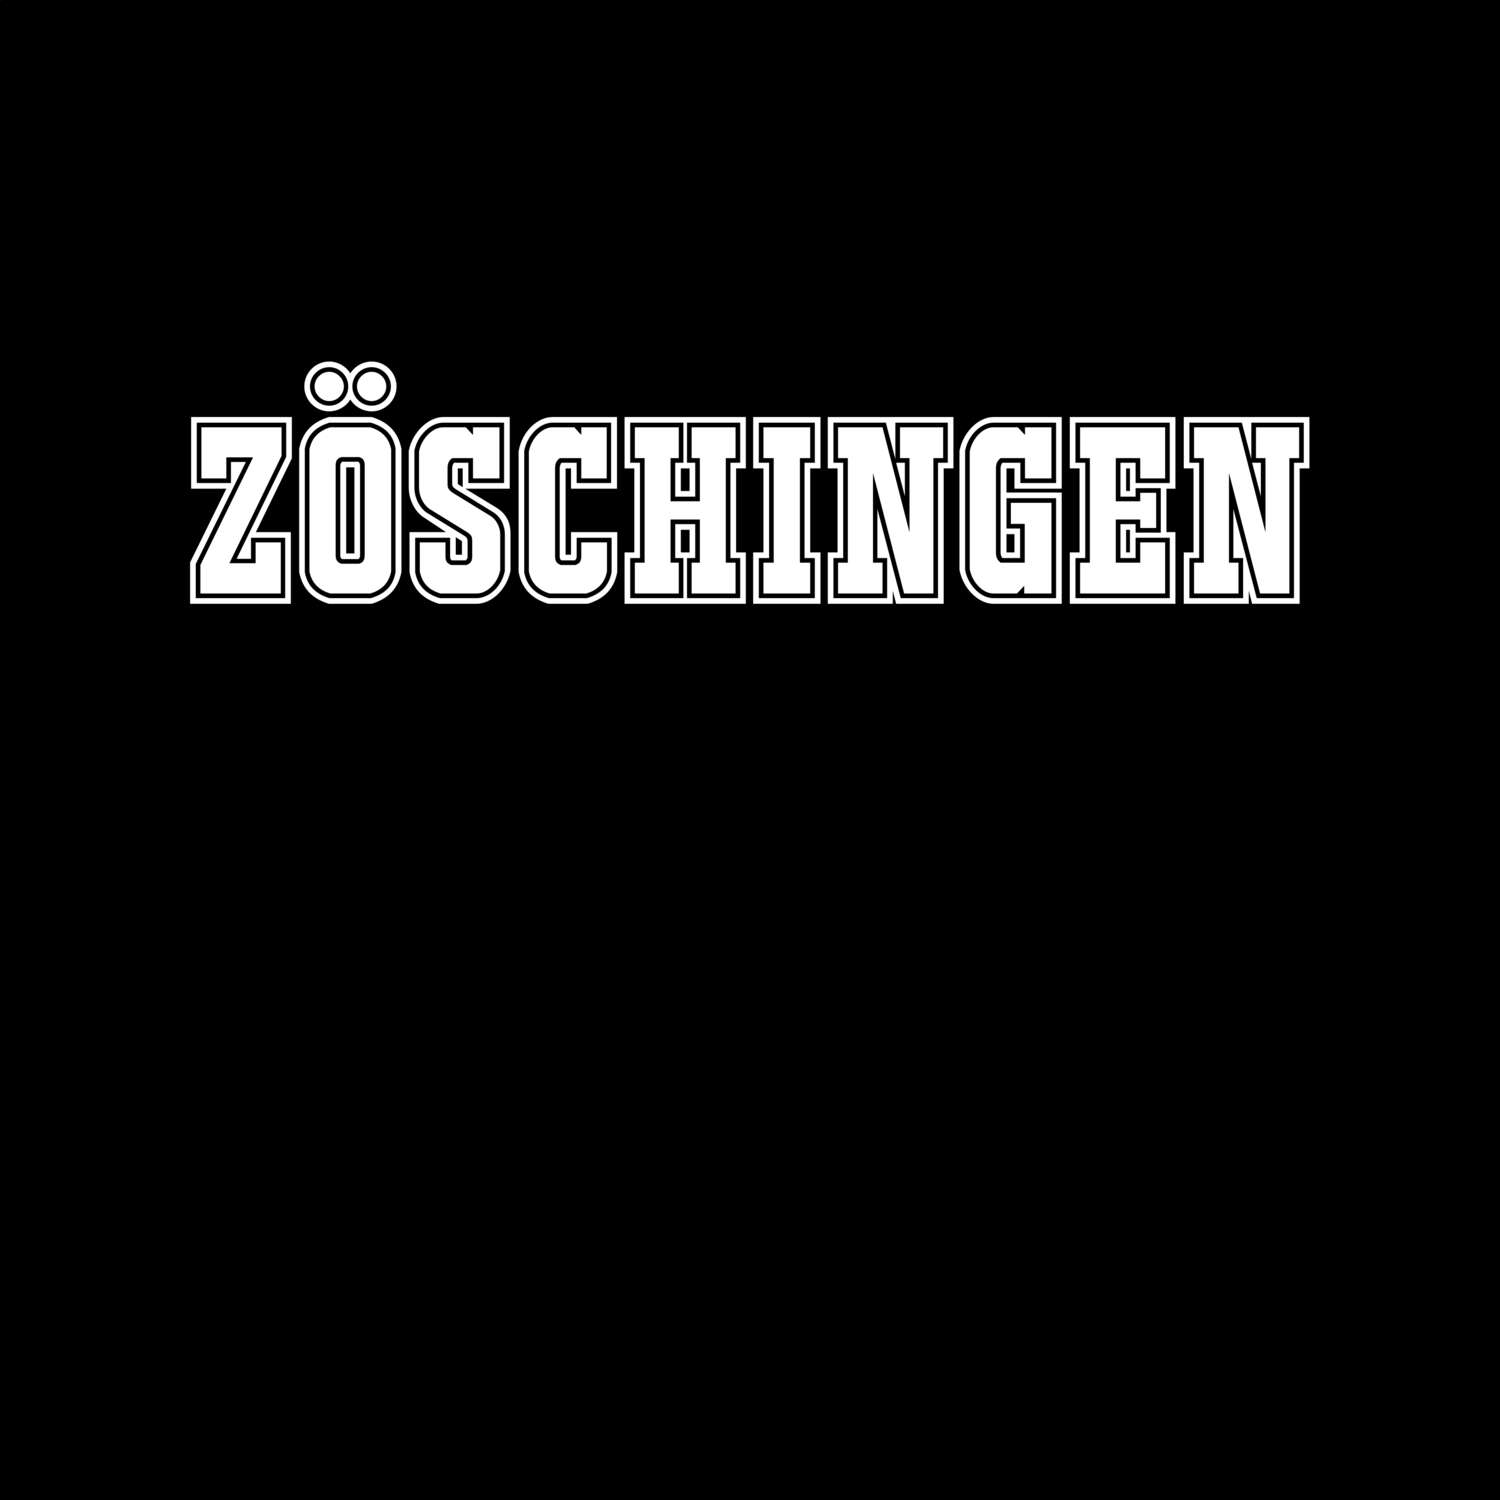 Zöschingen T-Shirt »Classic«